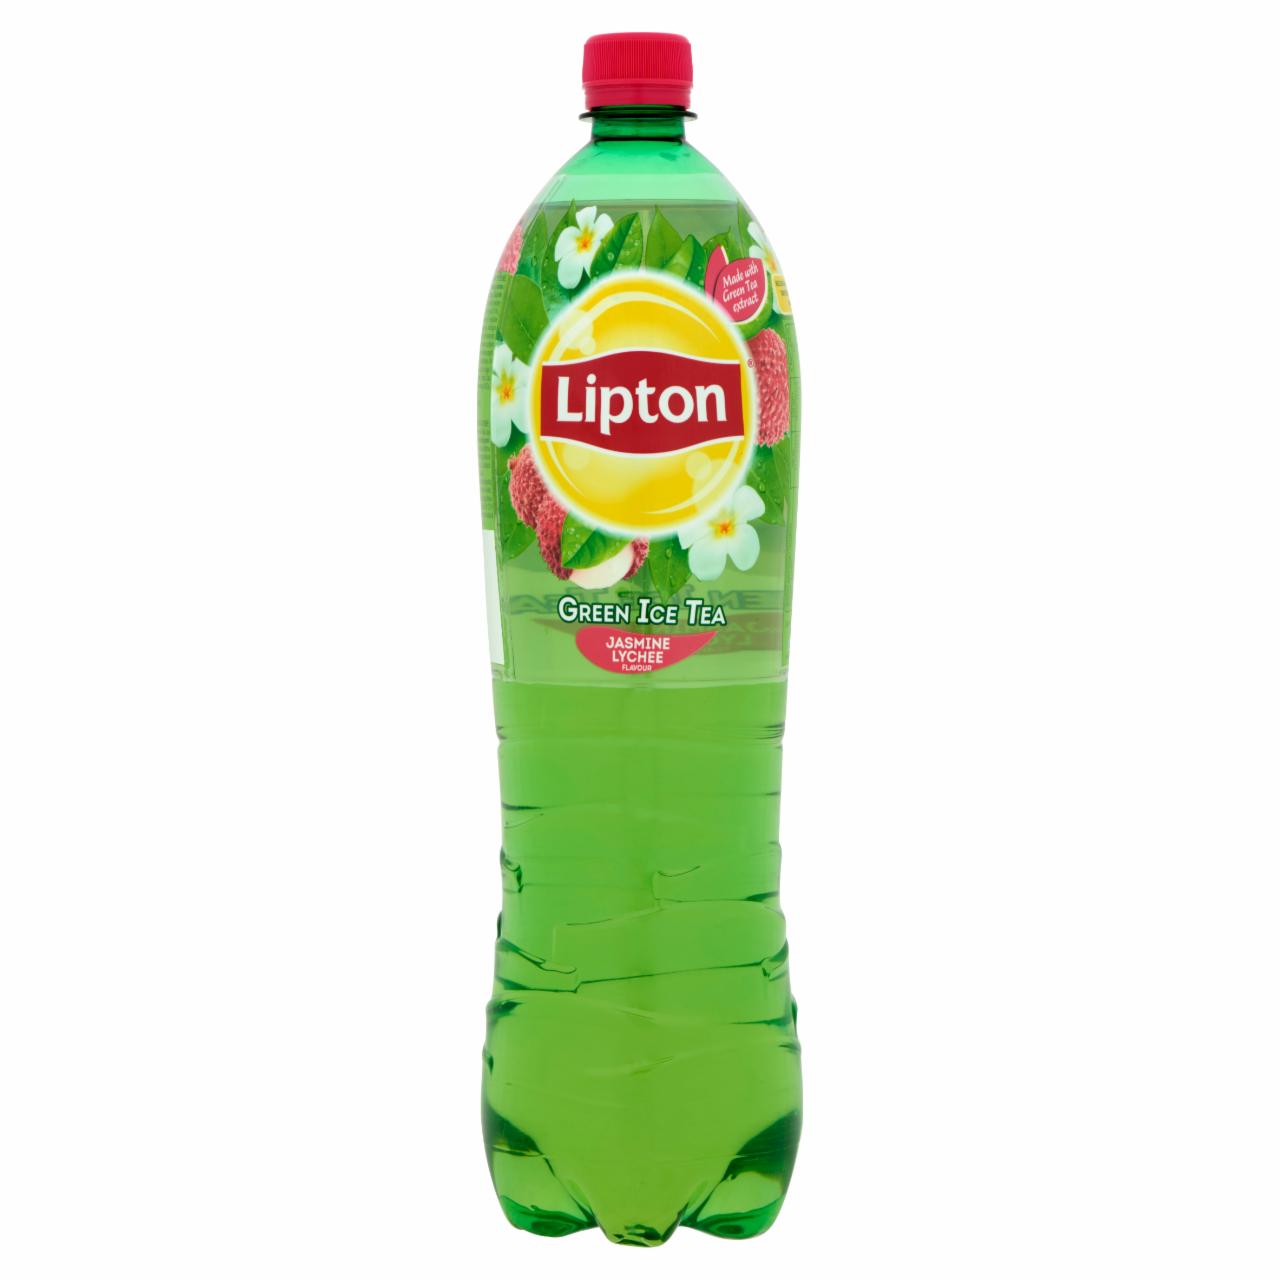 Képek - Lipton Green Ice Tea csökkentett energiatartalmú jázmin és licsi ízű szénsavmentes üdítőital 1,5 l